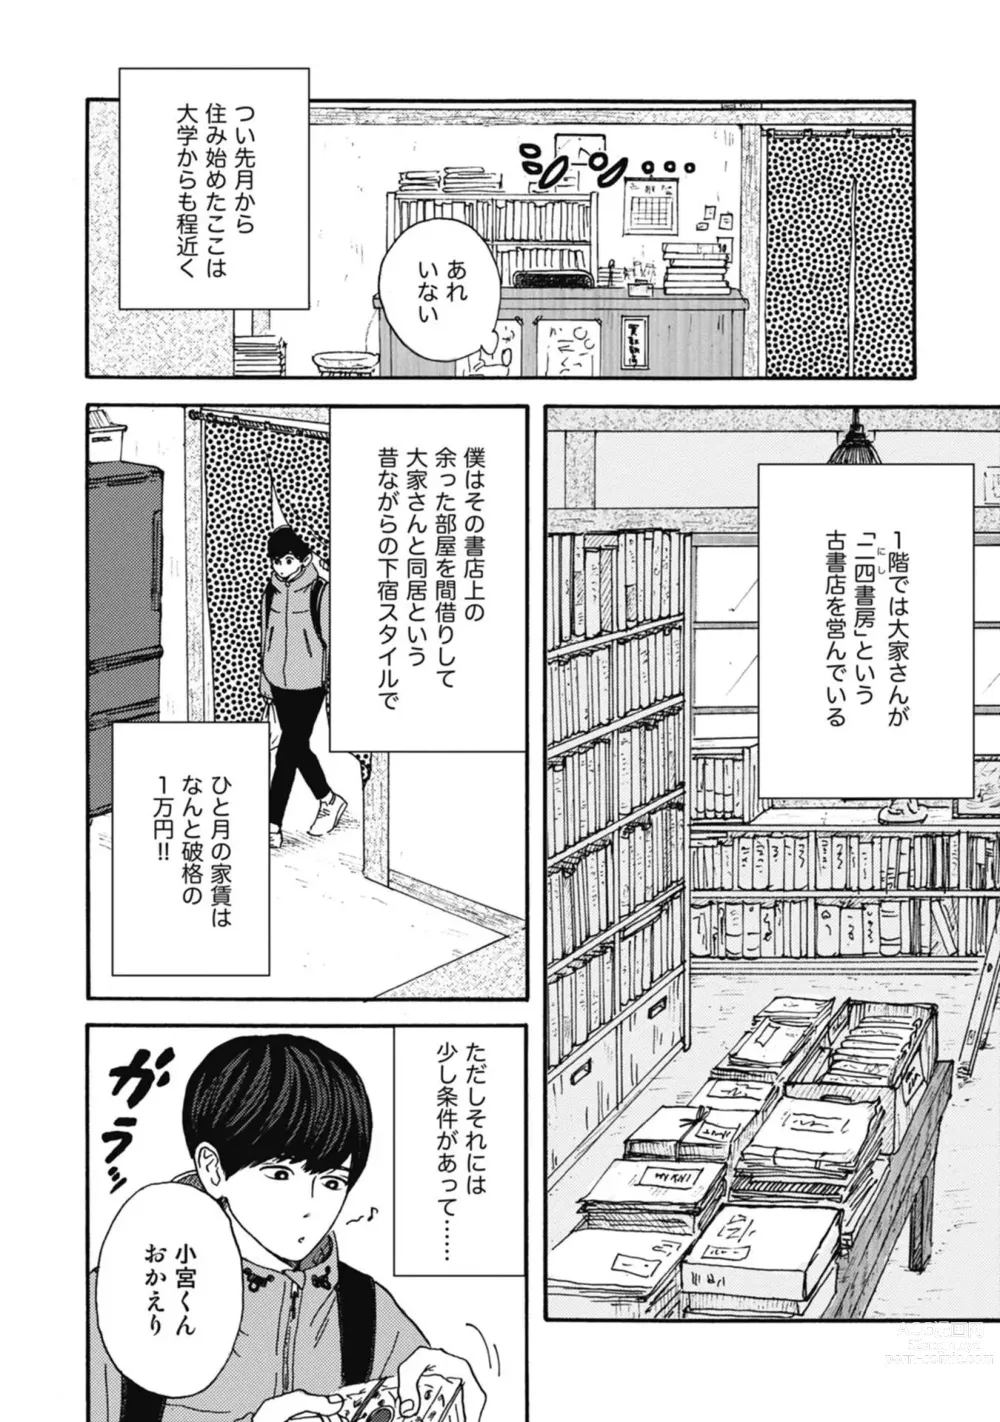 Page 10 of manga Ushimitsu Dokidoki Kosyotentan